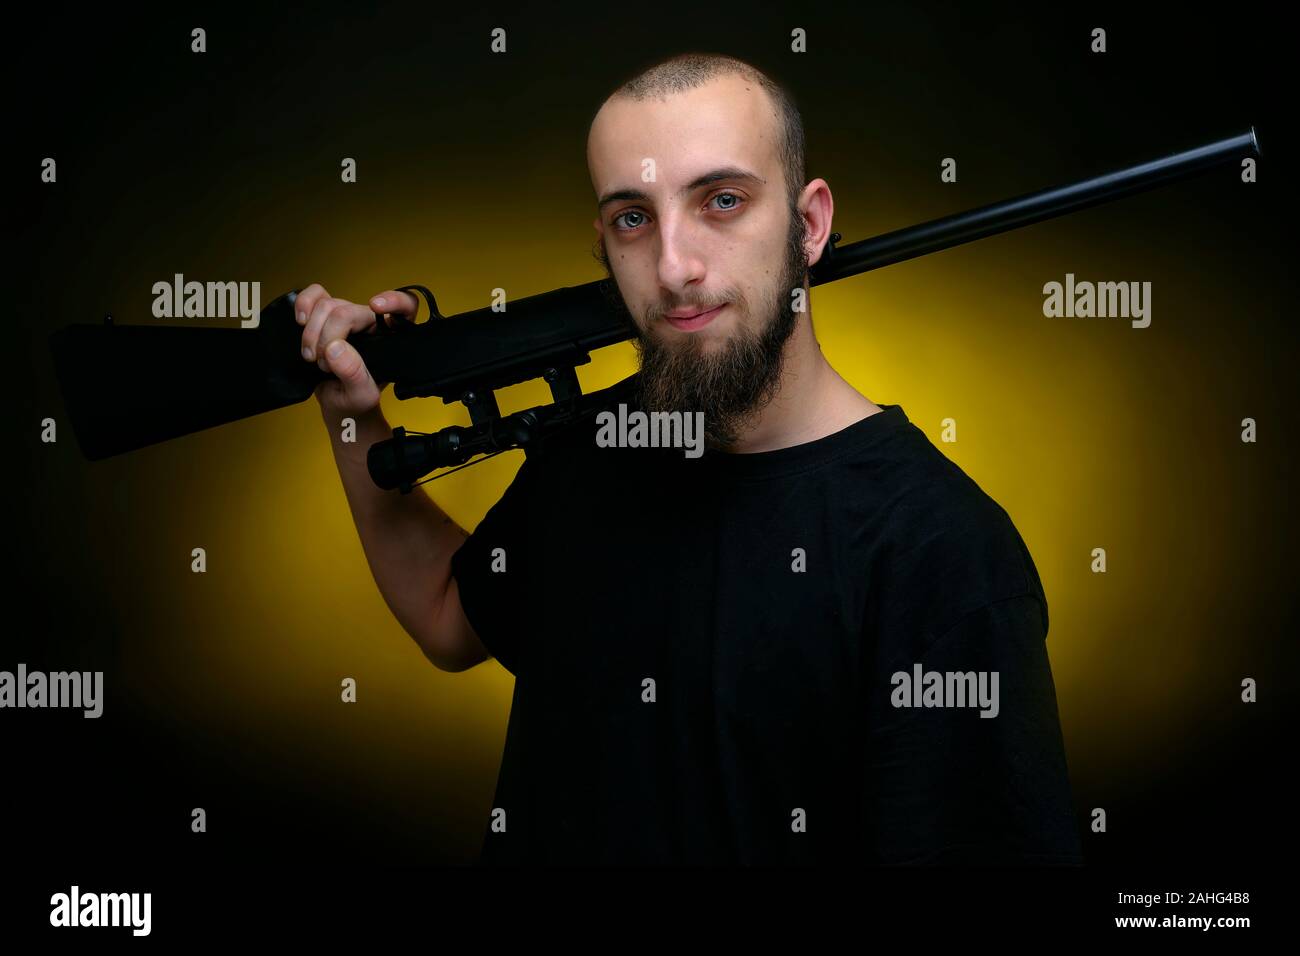 Ritratto di un uomo con un fucile da caccia riffle sulla sua spalla. Bel ragazzo sparato contro scuro dello sfondo giallo Foto Stock